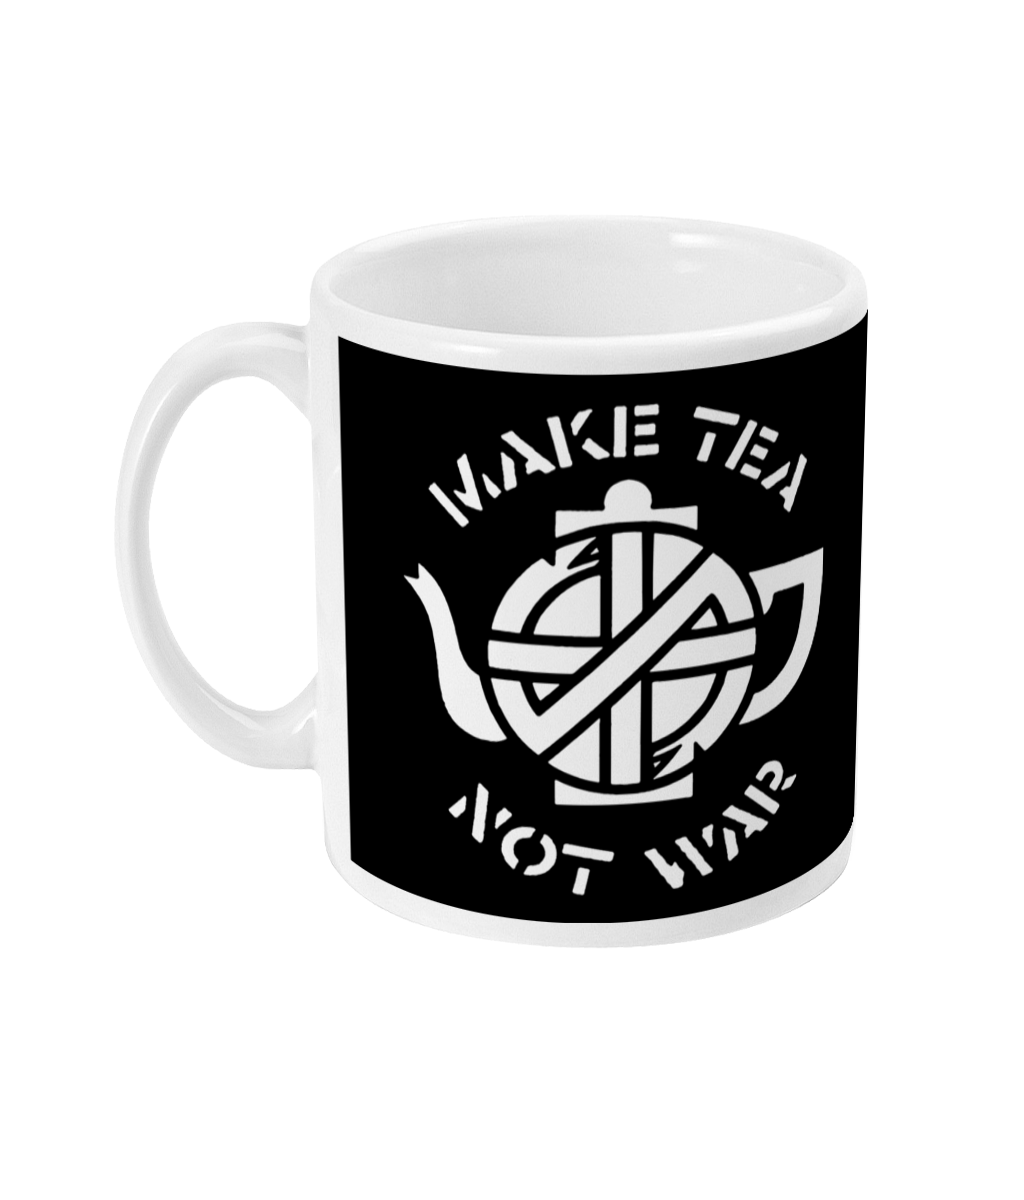 CRASS - Make Tea Not War - White Text - Mug